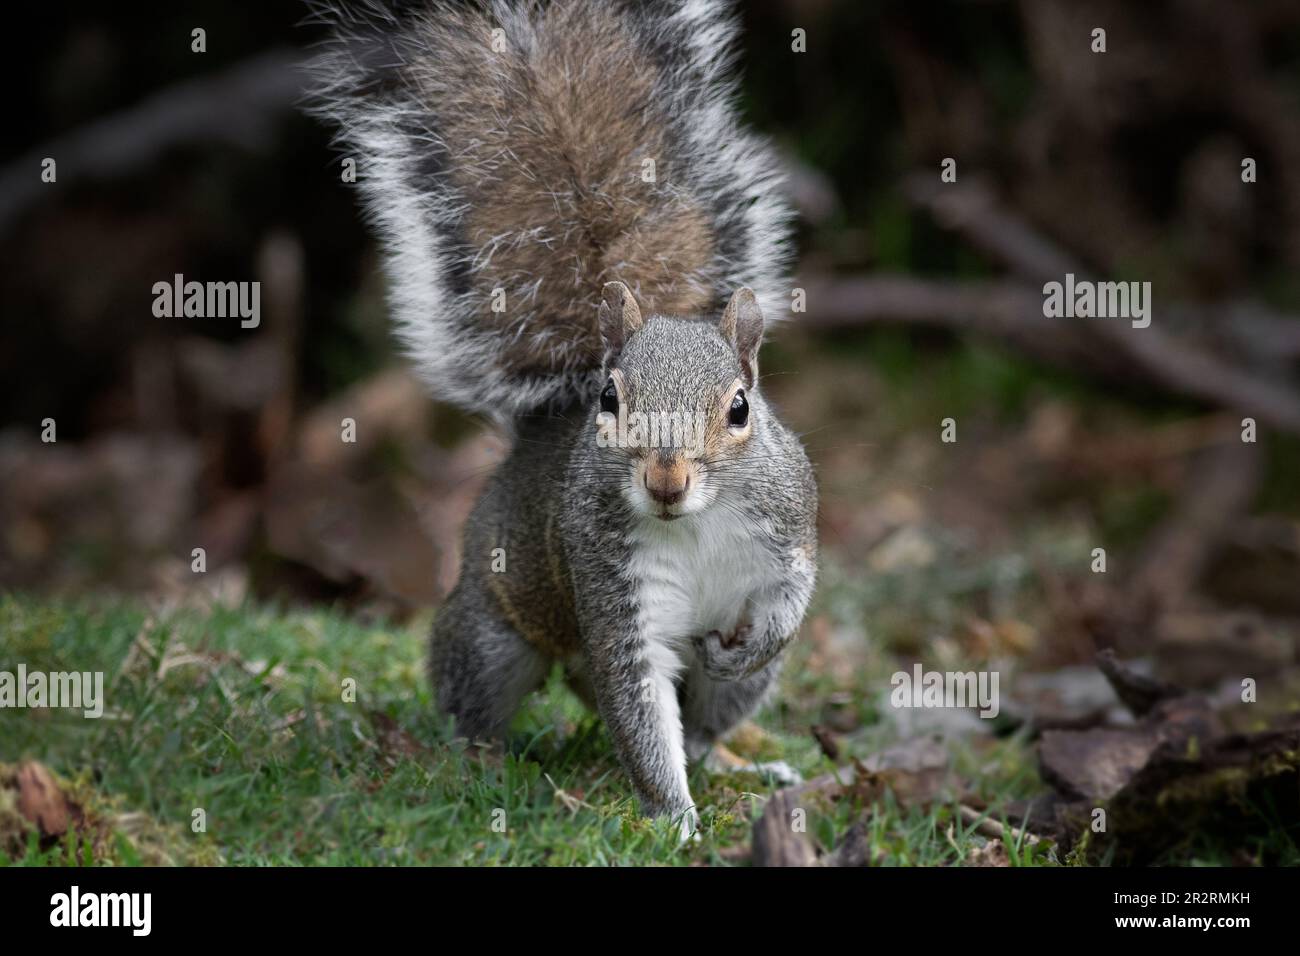 Primo piano di uno scoiattolo grigio con una gamba anteriore sollevata e guardando direttamente la telecamera Foto Stock